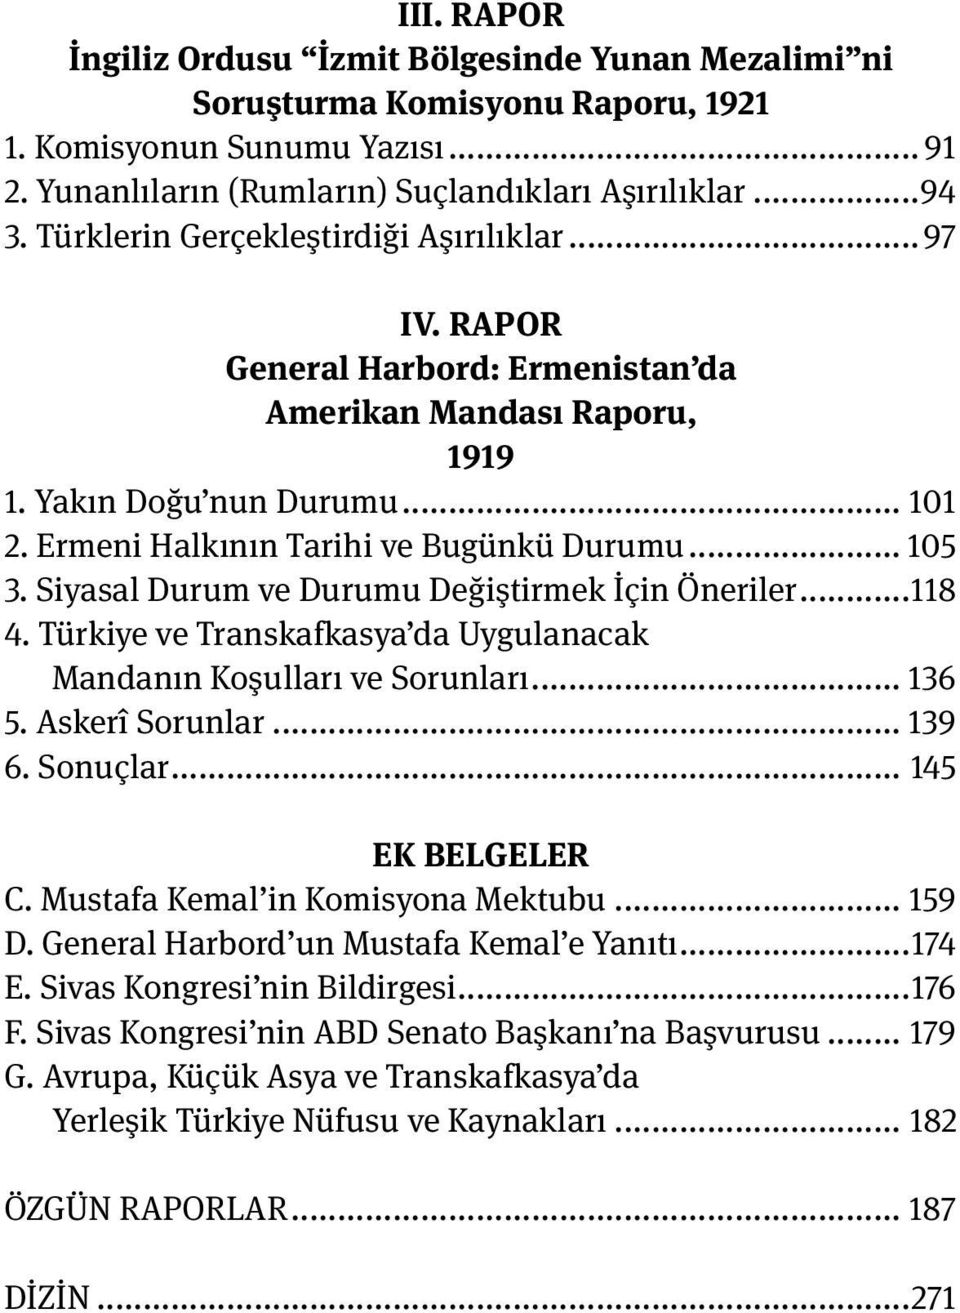 Siyasal Durum ve Durumu Değiştirmek İçin Öneriler...118 4. Türkiye ve Transkafkasya da Uygulanacak Mandanın Koşulları ve Sorunları... 136 5. Askerî Sorunlar... 139 6. Sonuçlar... 145 EK BELGELER C.